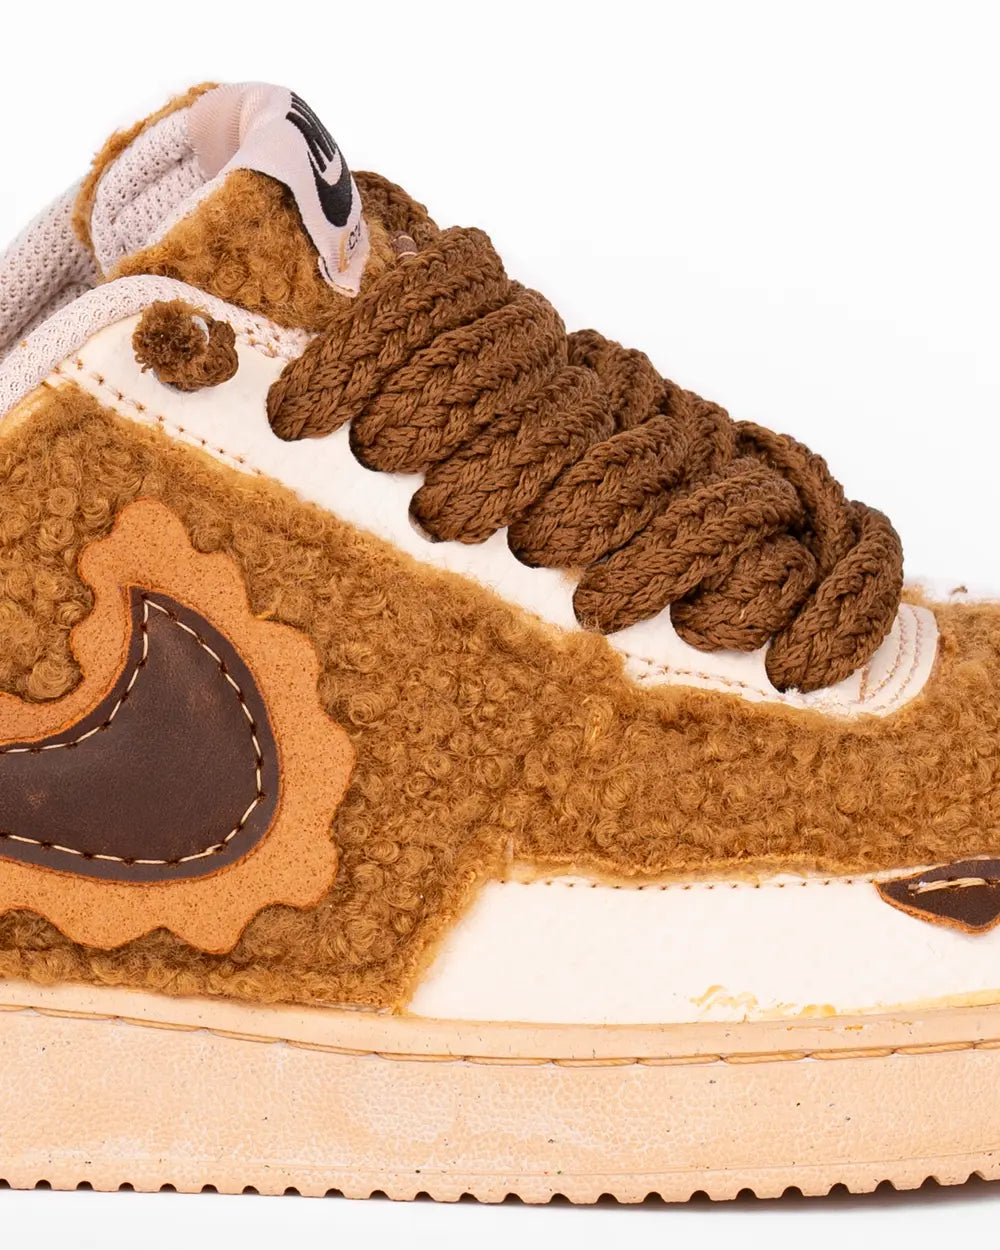 Dettaglio: Nike Court Vision rivestita con tessuto morbito teddy marrone, lacci grossi intrecciati marroni